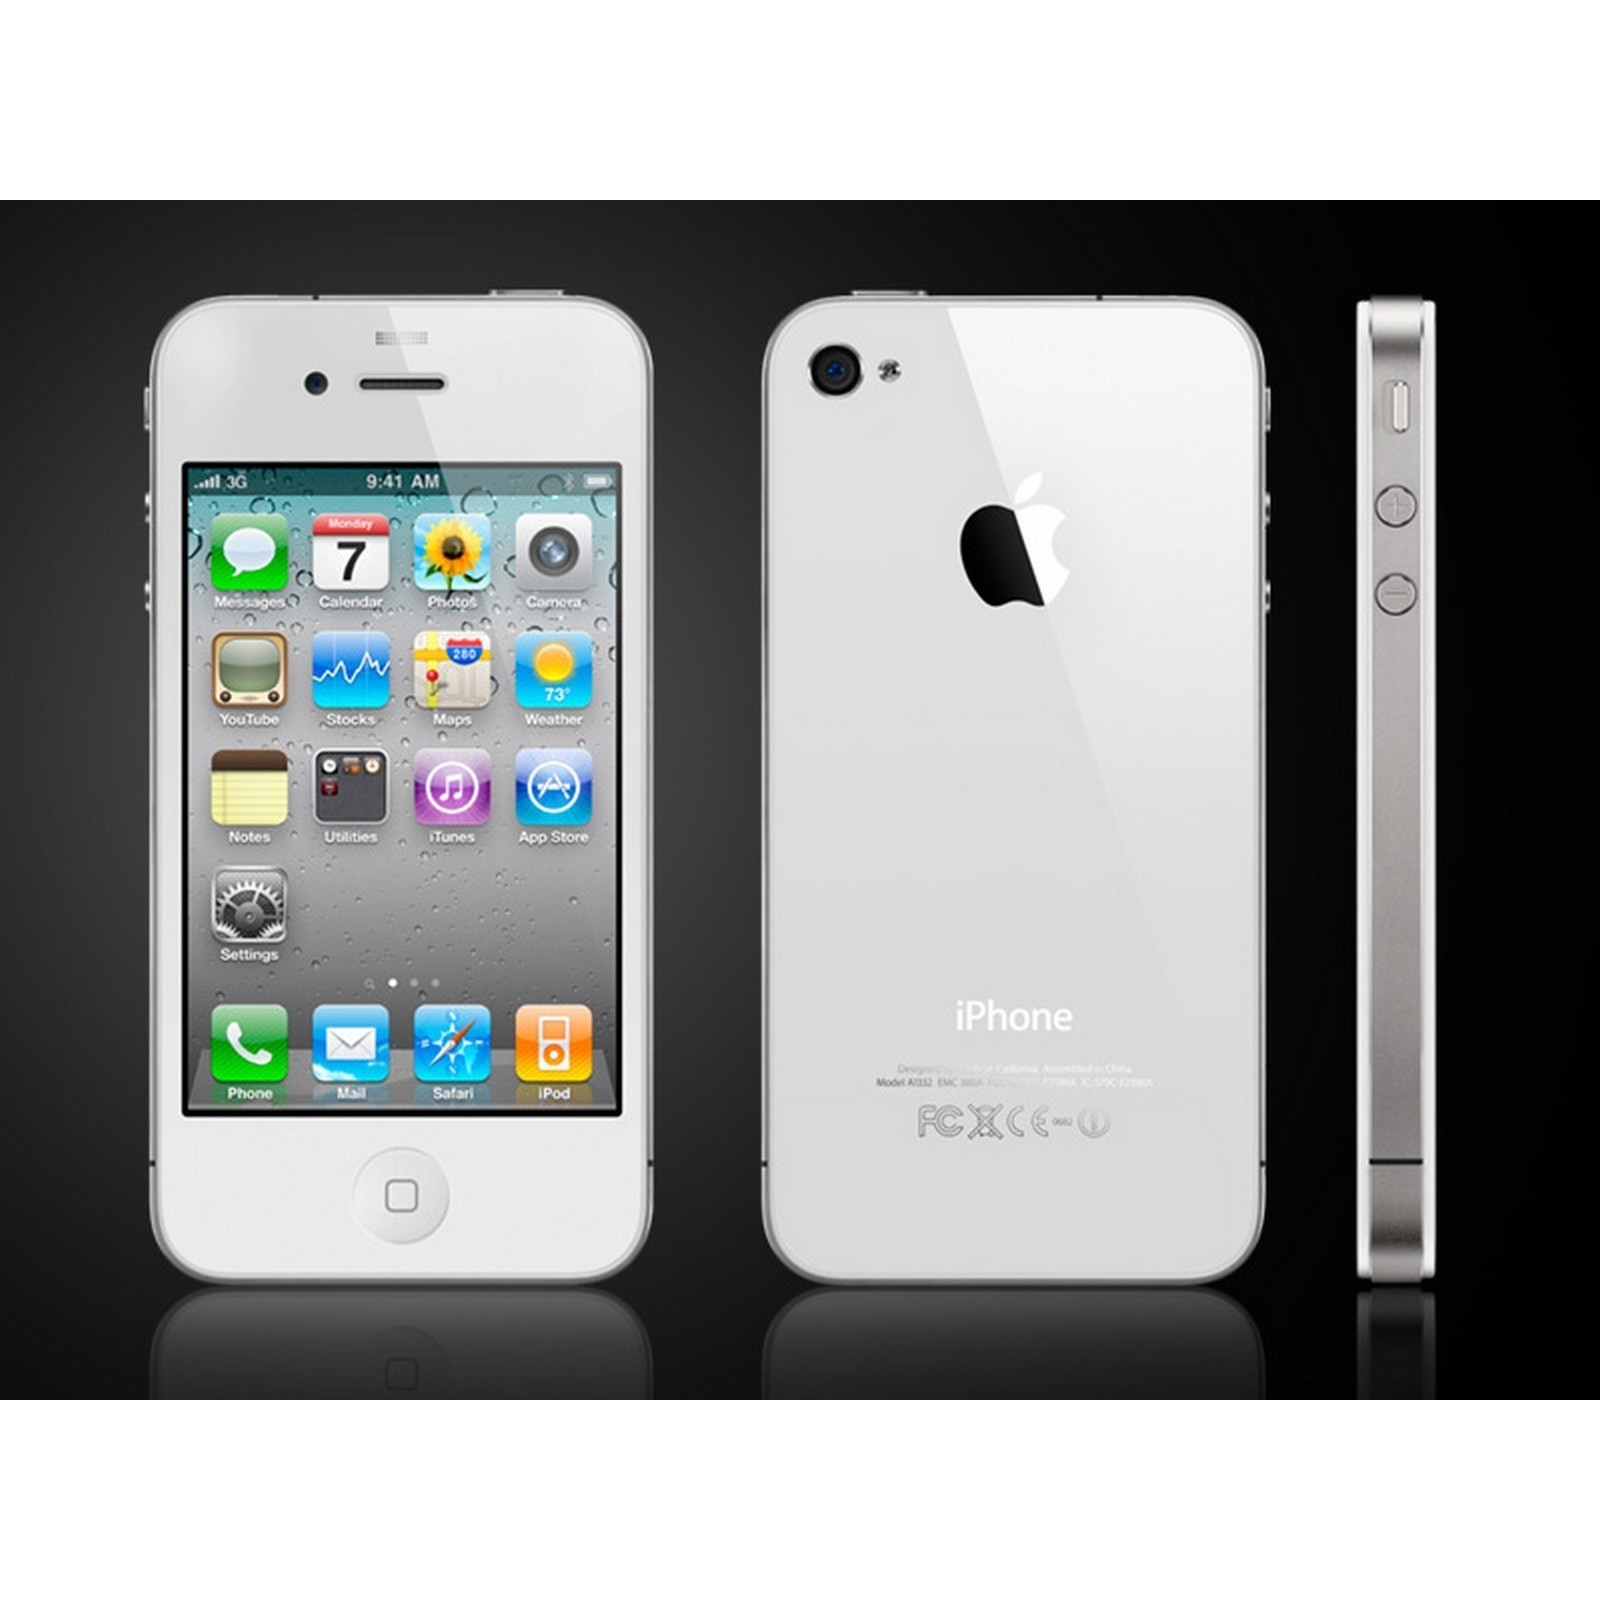 Мобильный телефон Apple iPhone 4 16GB (черный)